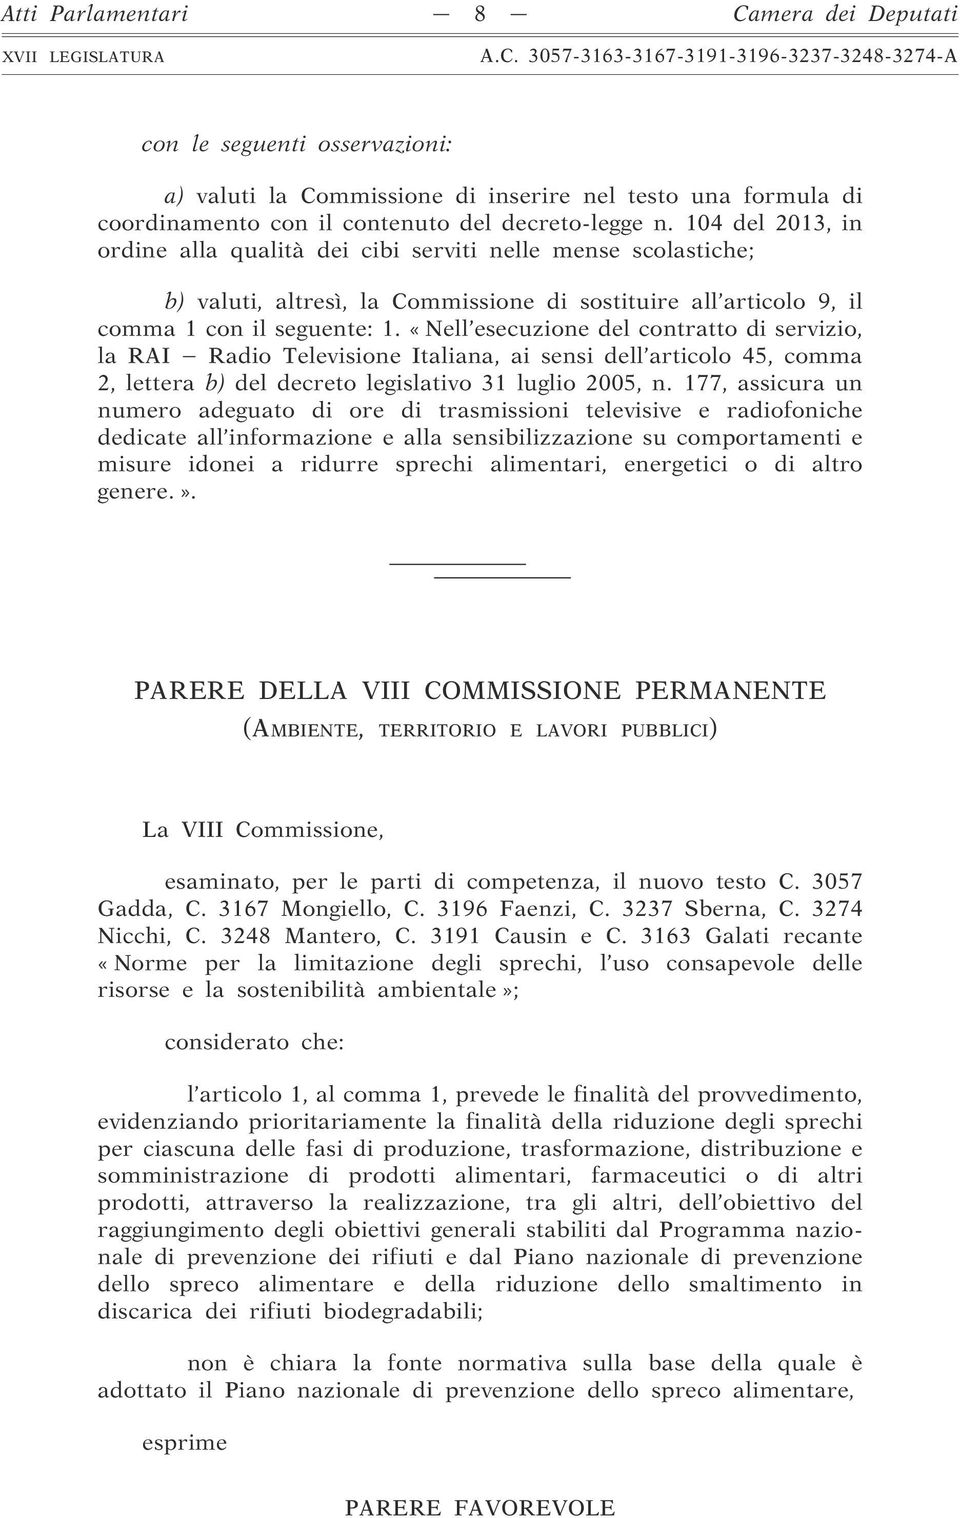 «Nell esecuzione del contratto di servizio, la RAI Radio Televisione Italiana, ai sensi dell articolo 45, comma 2, lettera b) del decreto legislativo 31 luglio 2005, n.